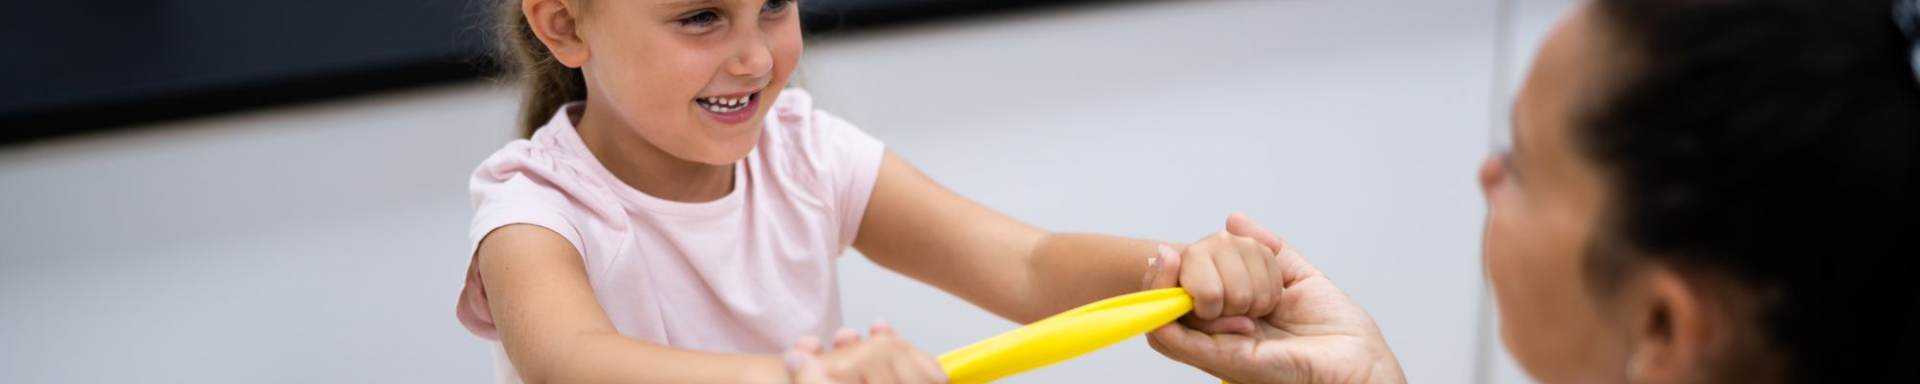 Eine Therapeutin mit einem kleinen Mädchen - gemeinsam ziehen sie ein gelbes Terraband auseinander